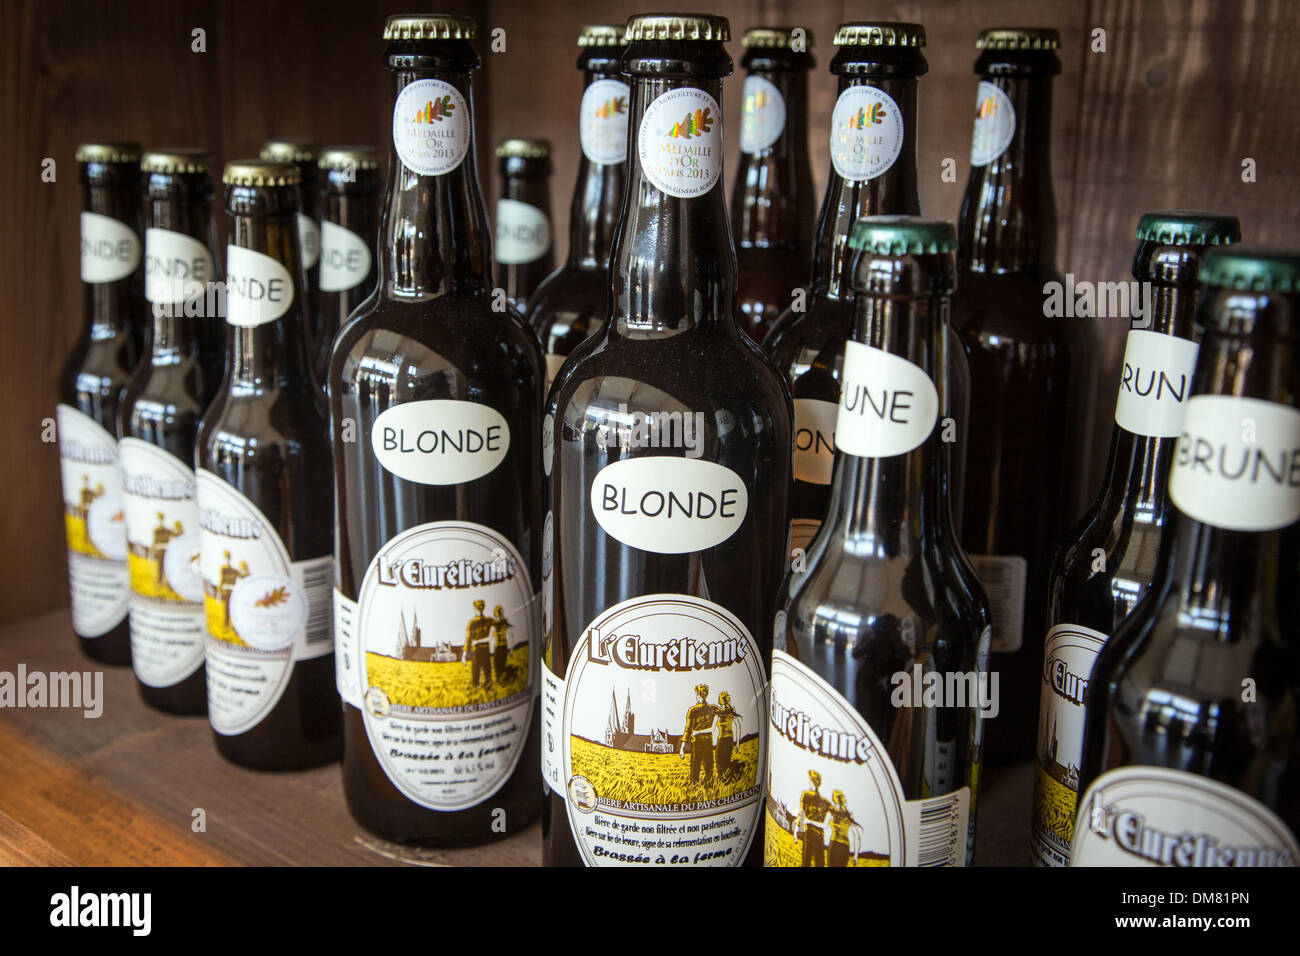 L'EURELIENNE, tradizionalmente birra fatta dalla regione CHARTRAIN, prodotti etichettati TERRES D'EURE-ET-LOIR, scaffali del negozio 'LE MARCHE GOURMAND DE MAITRE COCHON' AUBERGE GRAND'MAISON, MEAUCE, EURE-ET-LOIR (28), Francia Foto Stock